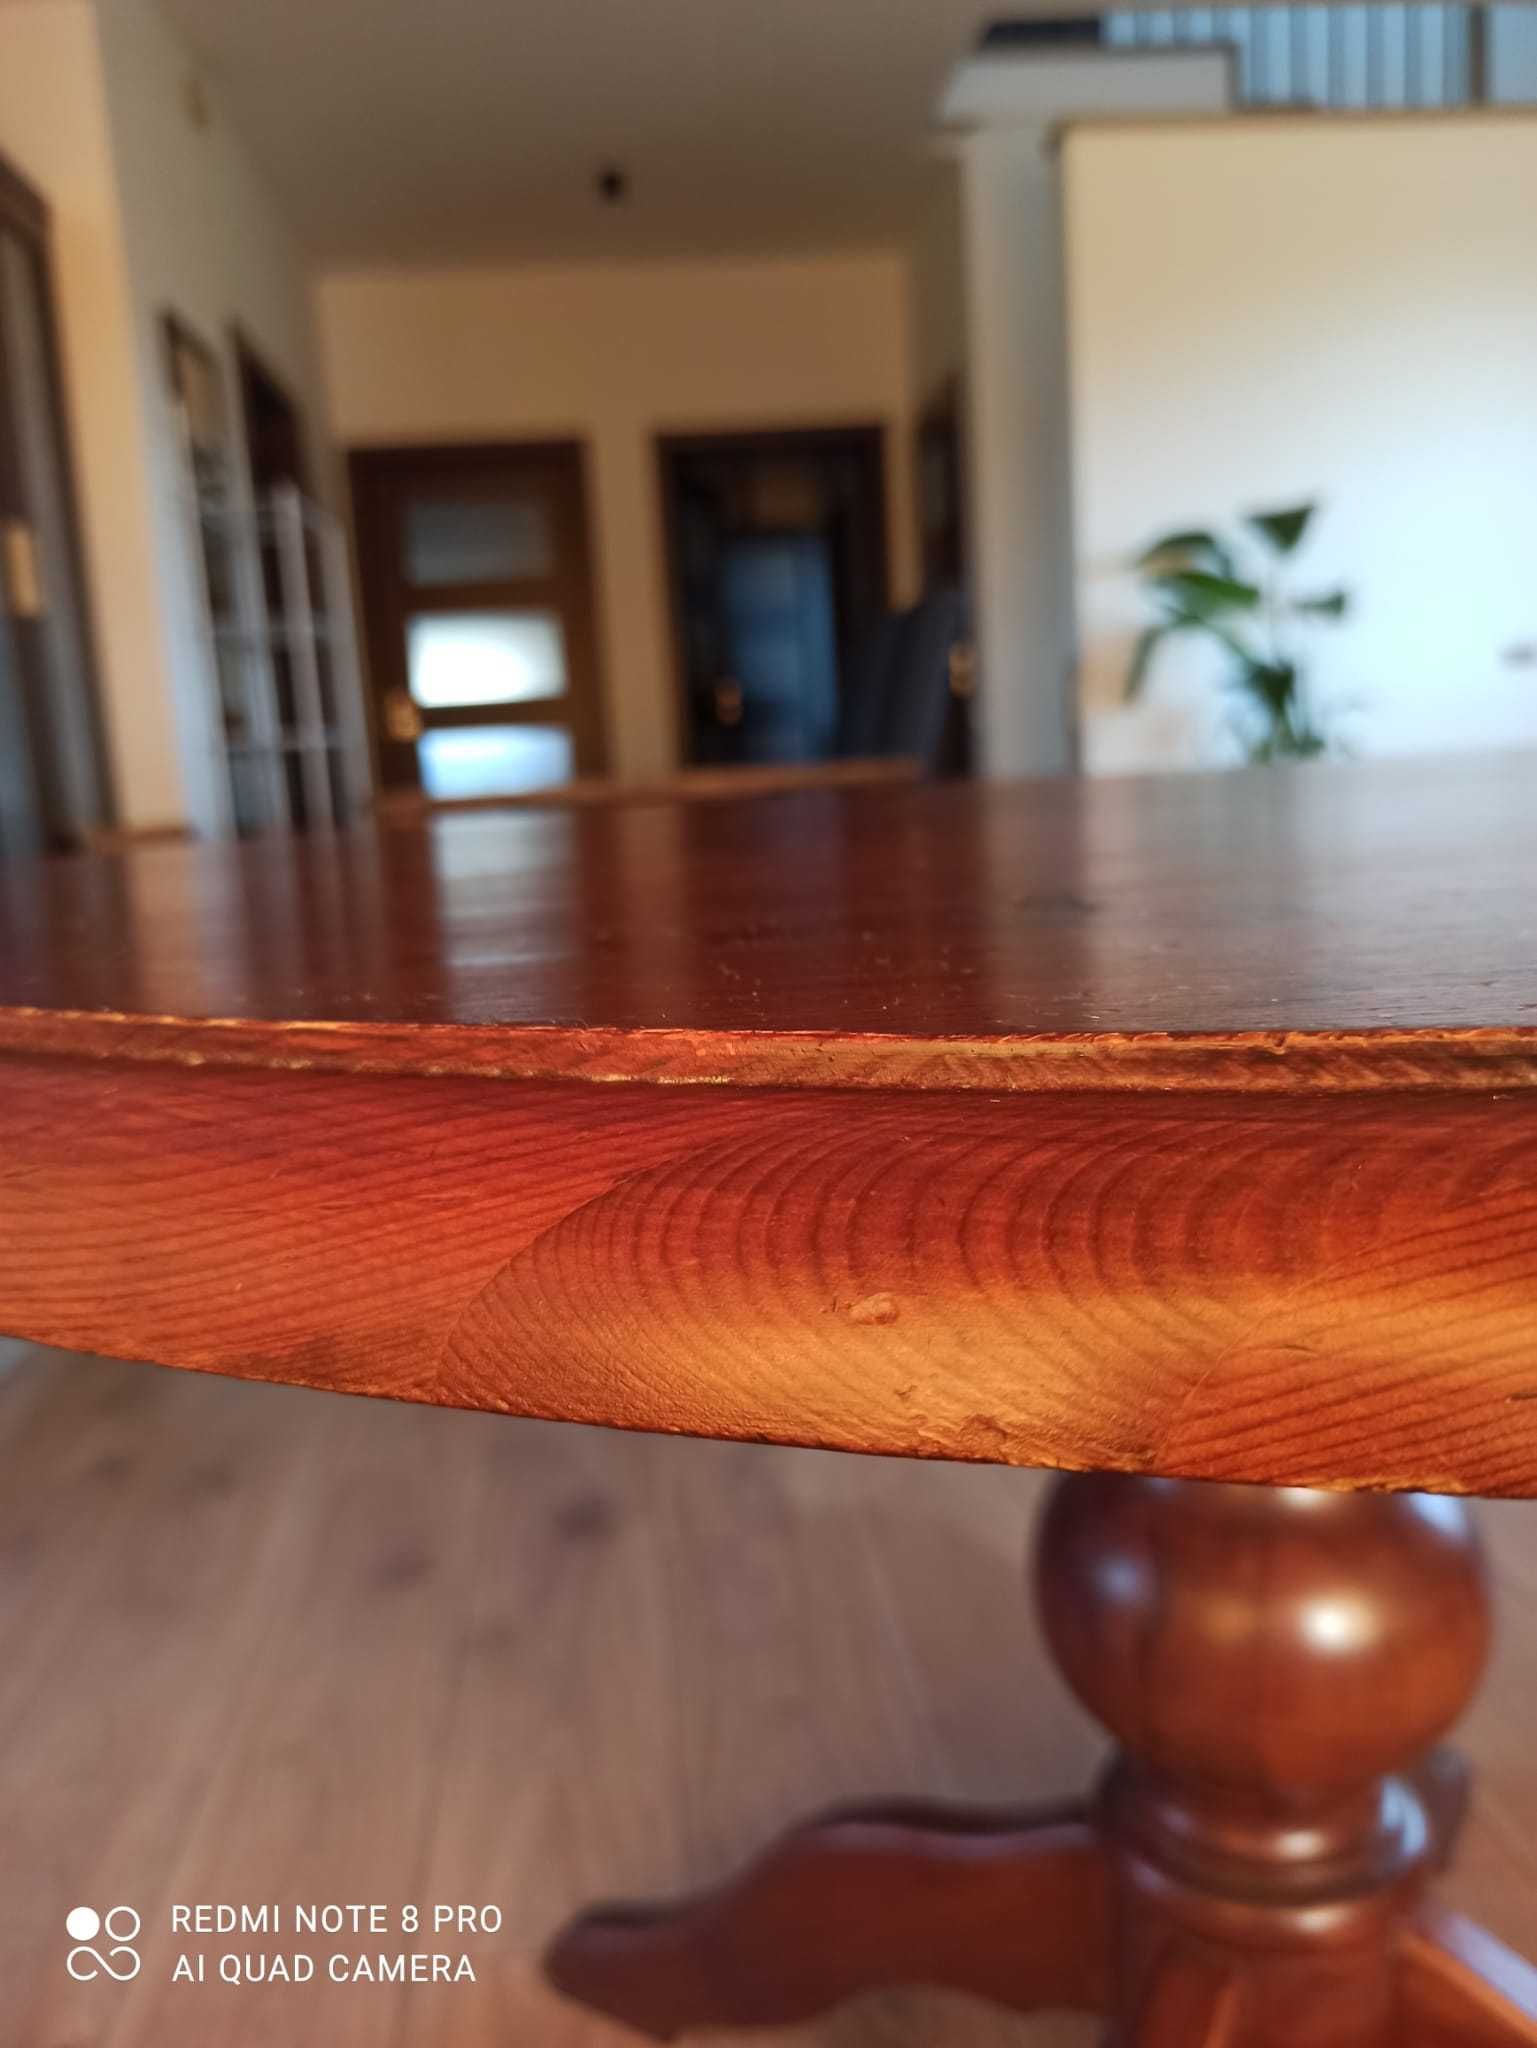 stół okrągły drewniany